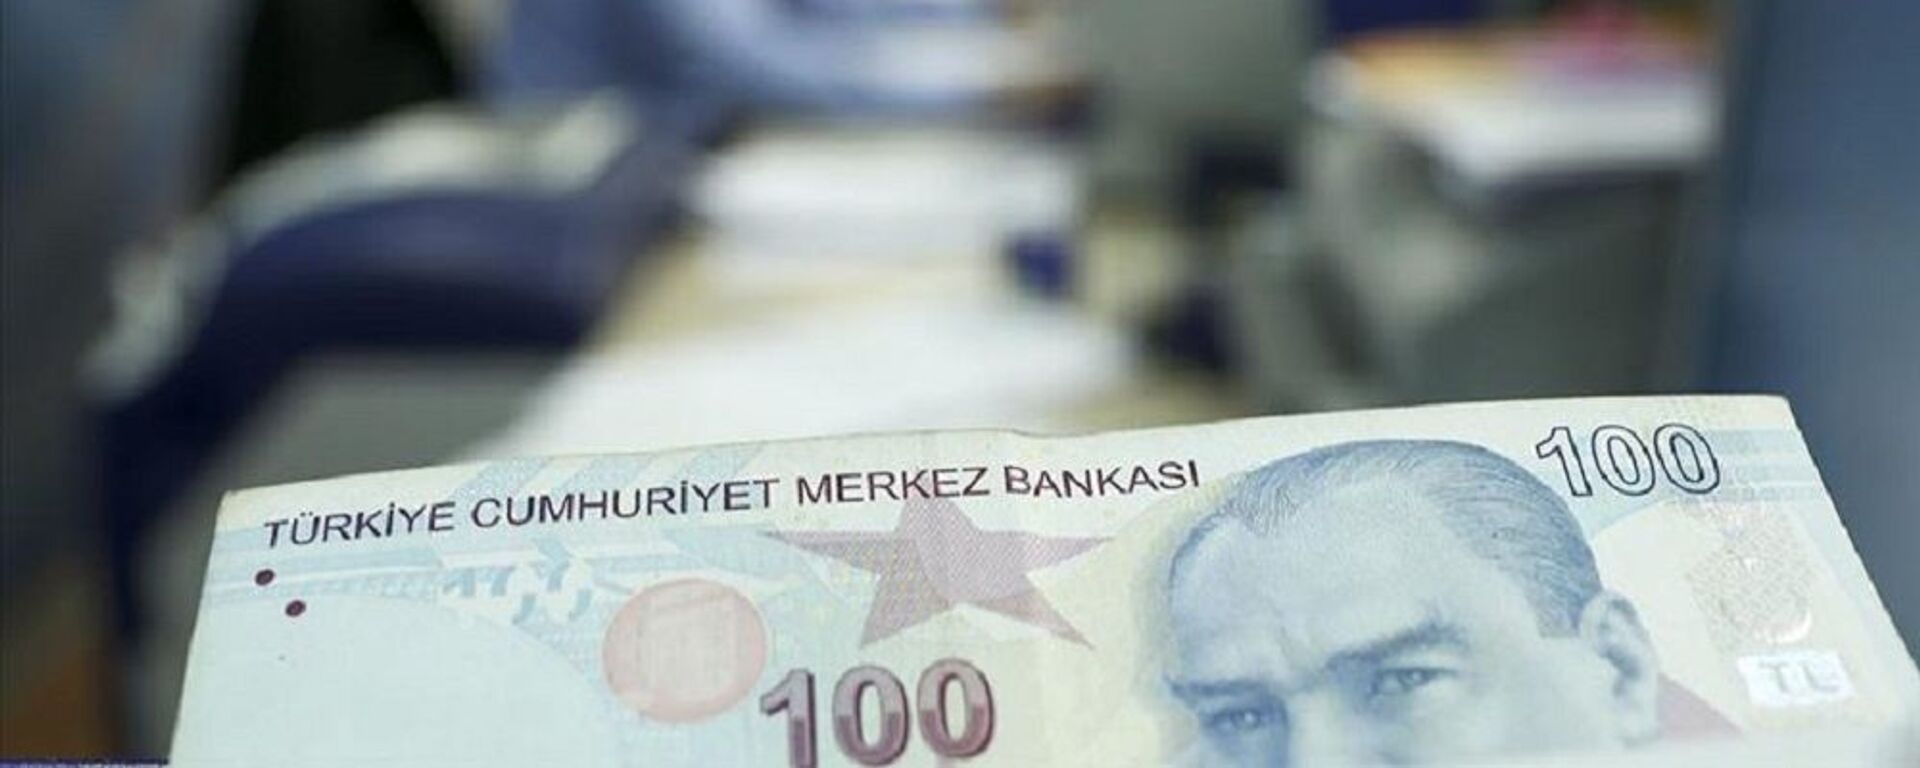 kısa çalışma ödeneği, türk lirası, banka, para - Sputnik Türkiye, 1920, 25.11.2021